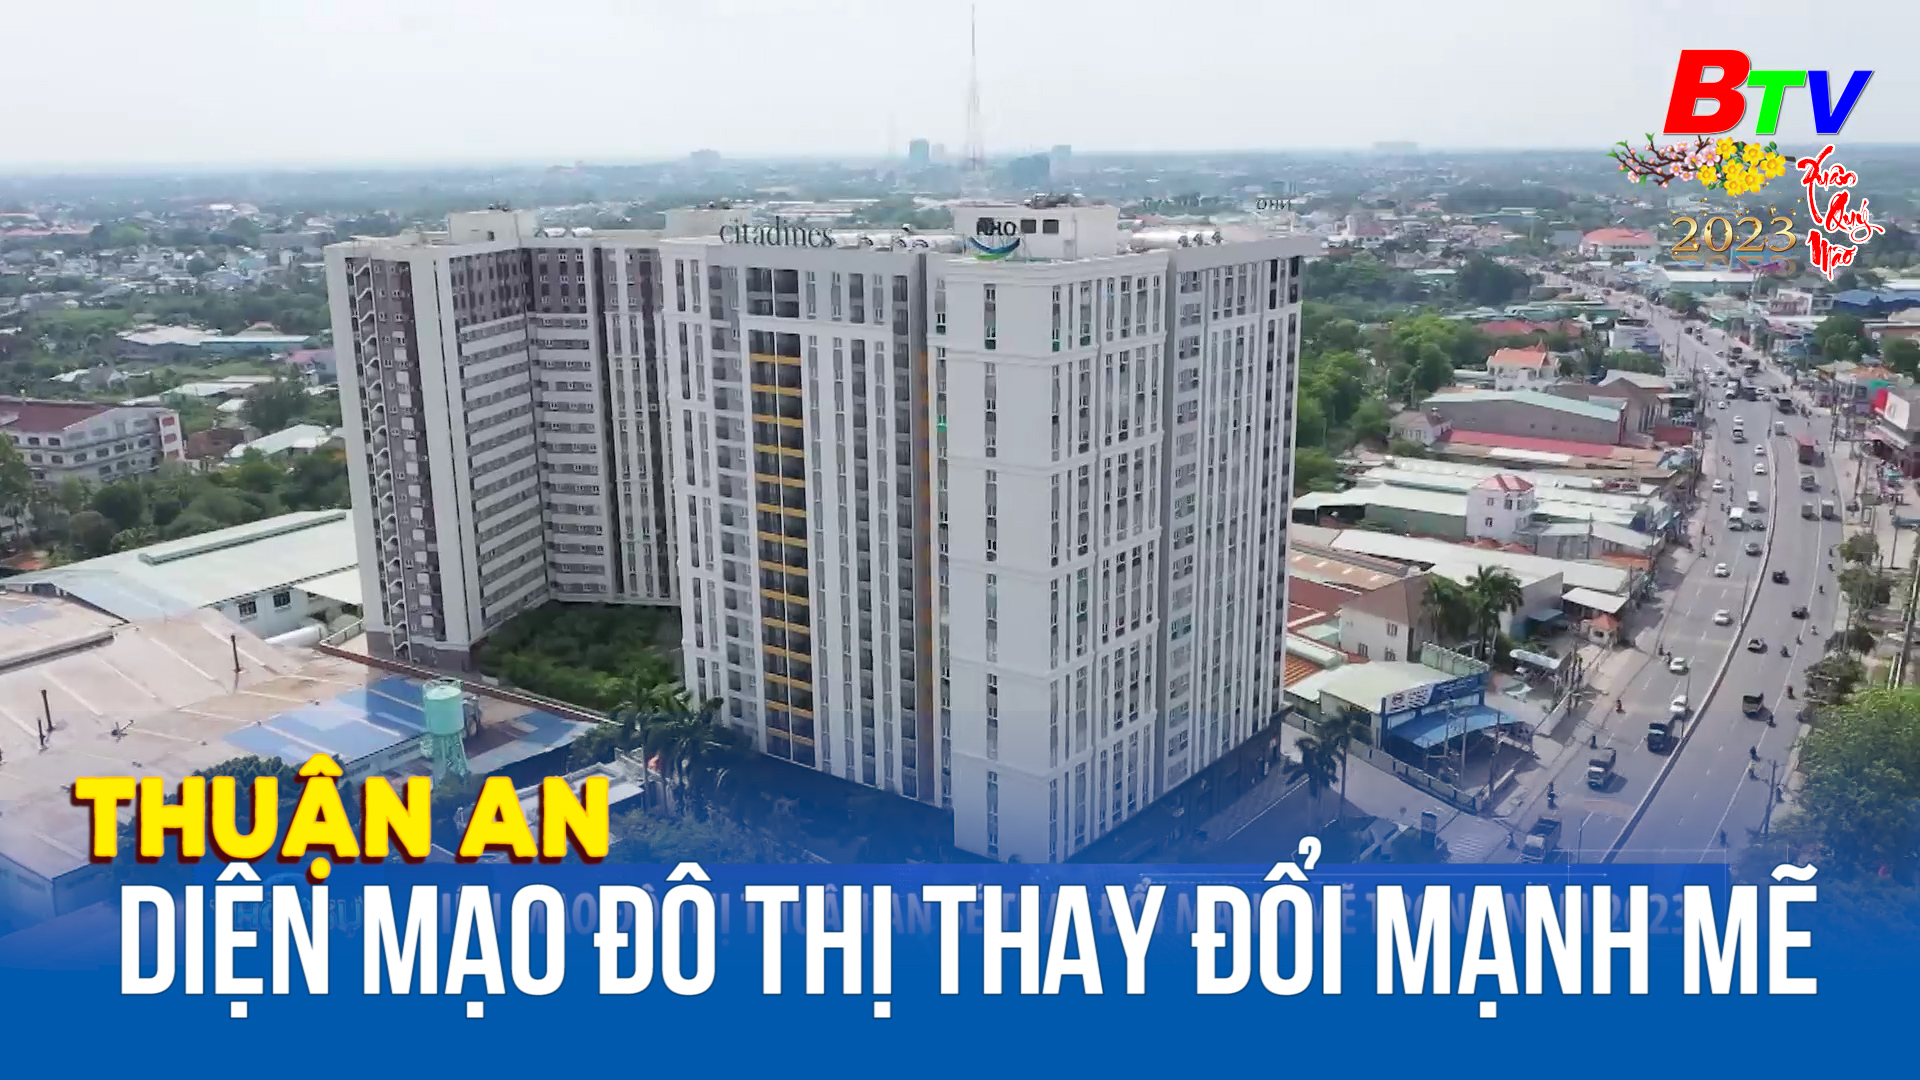 Diện mạo đô thị Thuận An sẽ thay đổi mạnh mẽ trong năm 2023